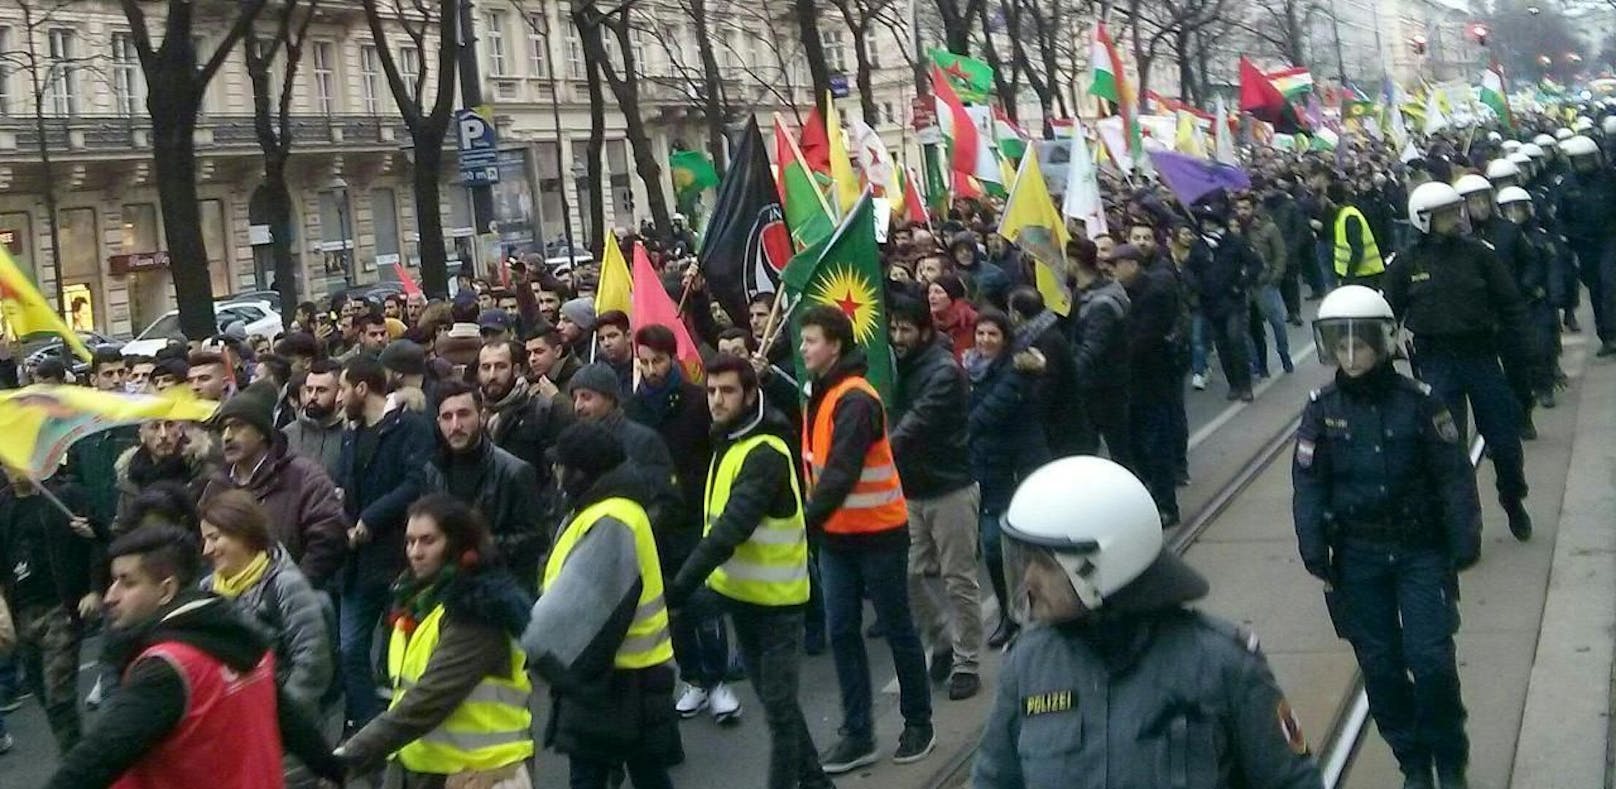 In Wien hat am Samstagnachmittag eine Demonstration gegen den türkischen Militäreinsatz in der nordsyrischen Region Afrin stattgefunden. Es kam dabei laut Beobachtern zu mehreren gewaltsamen Zwischenfällen.